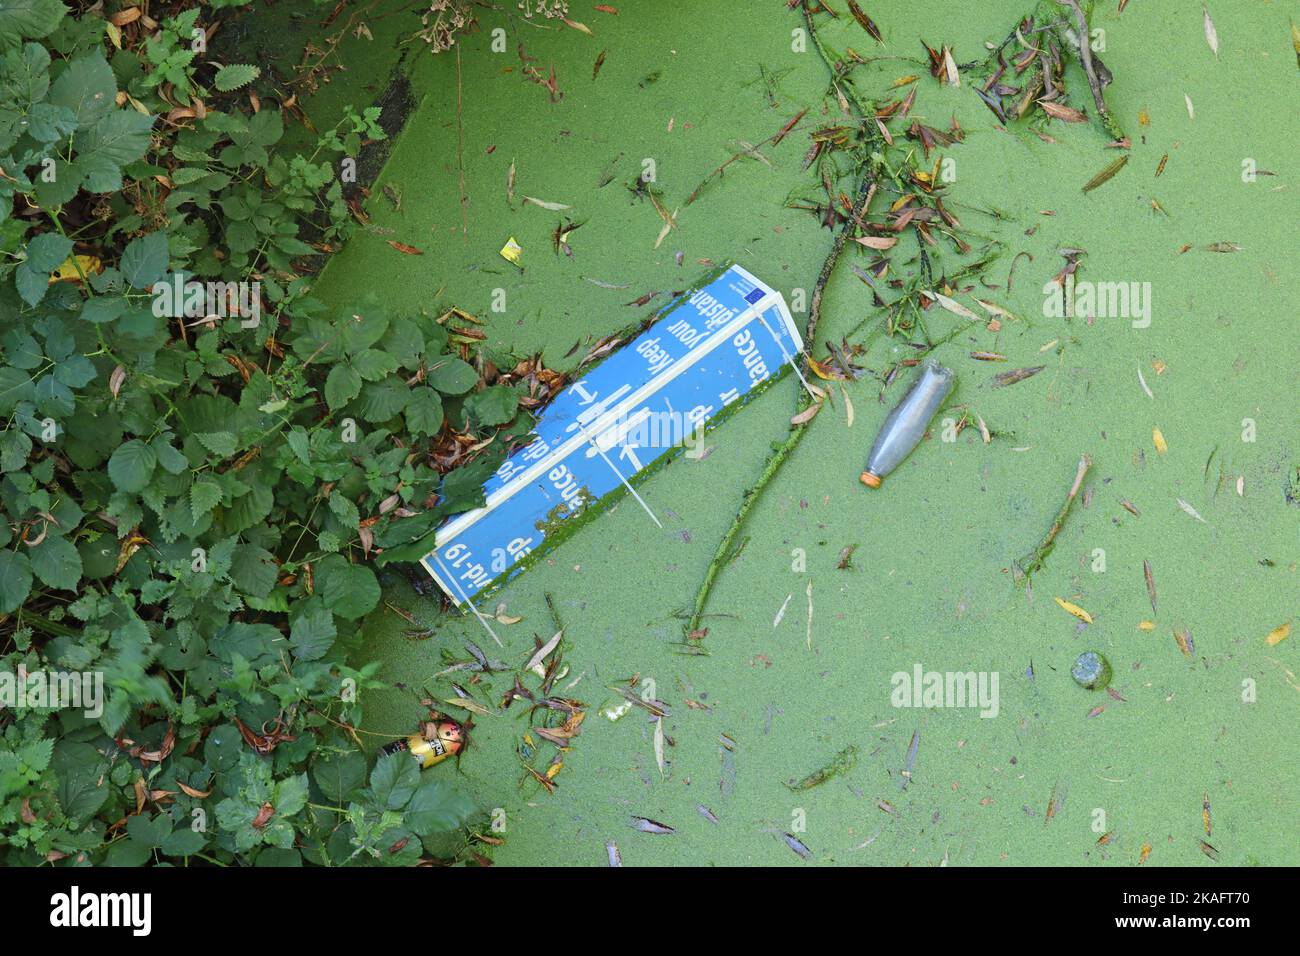 Eine entsorgte Covid-Notiz, eine Flasche und eine Dose schweben in Algen am Ufer des Flusses Parrett in Langport, Somerset Stockfoto